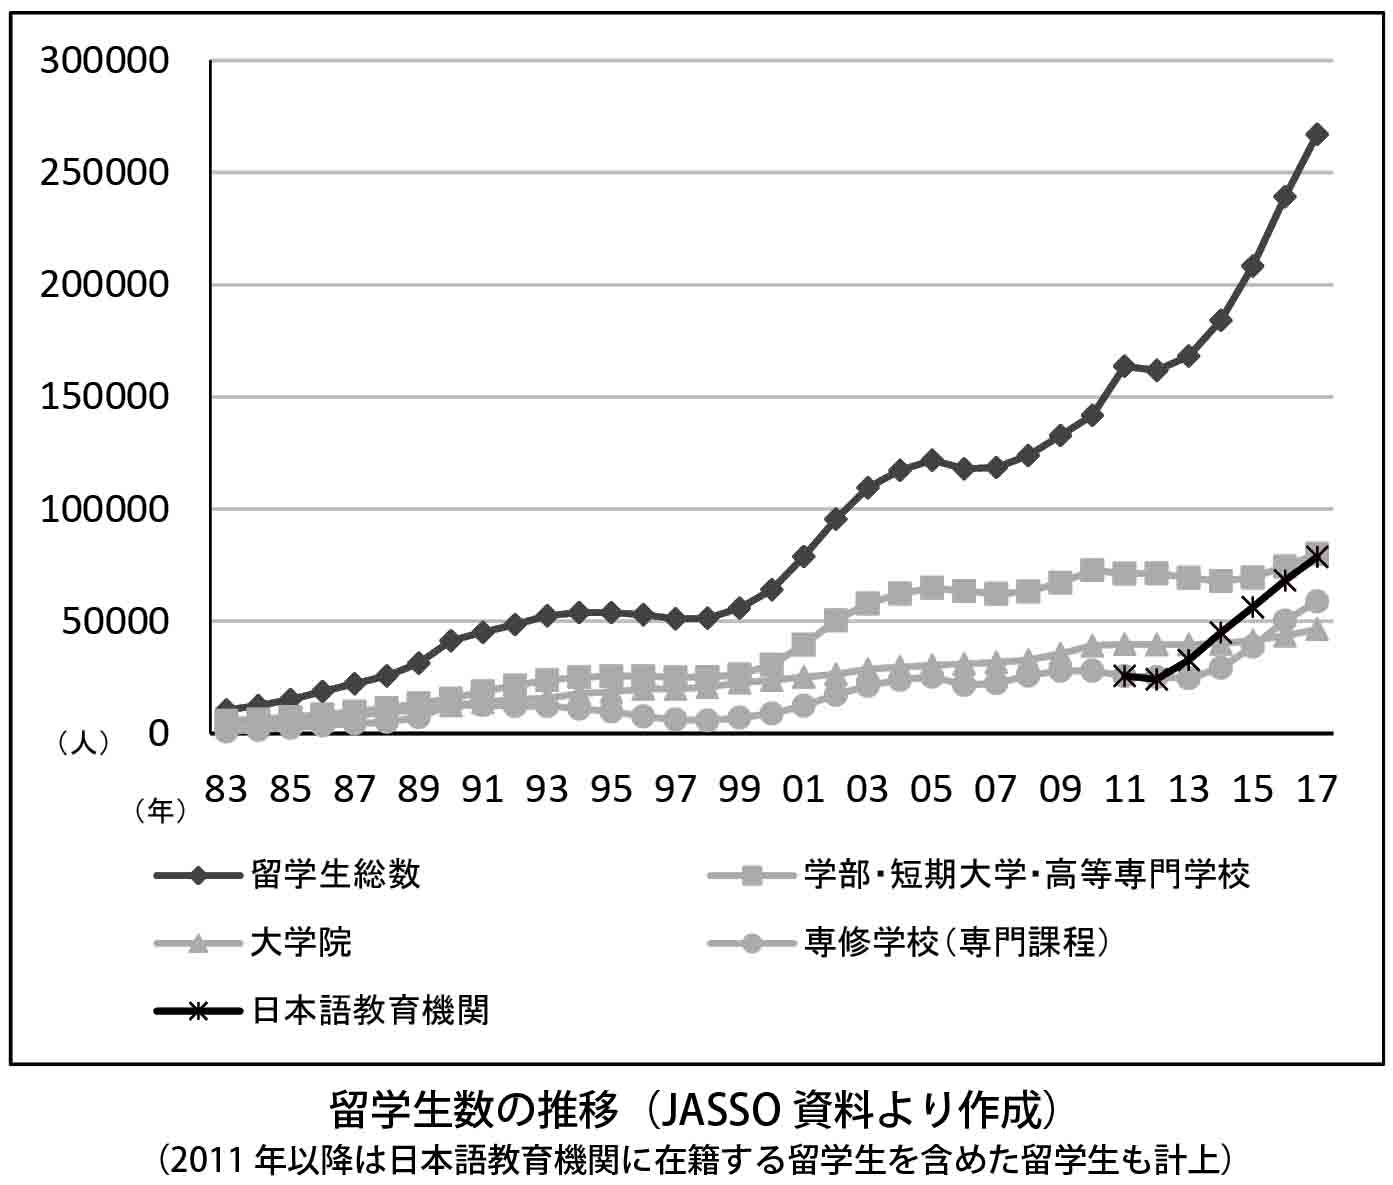 留学生数の推移（JASSO資料より作成）